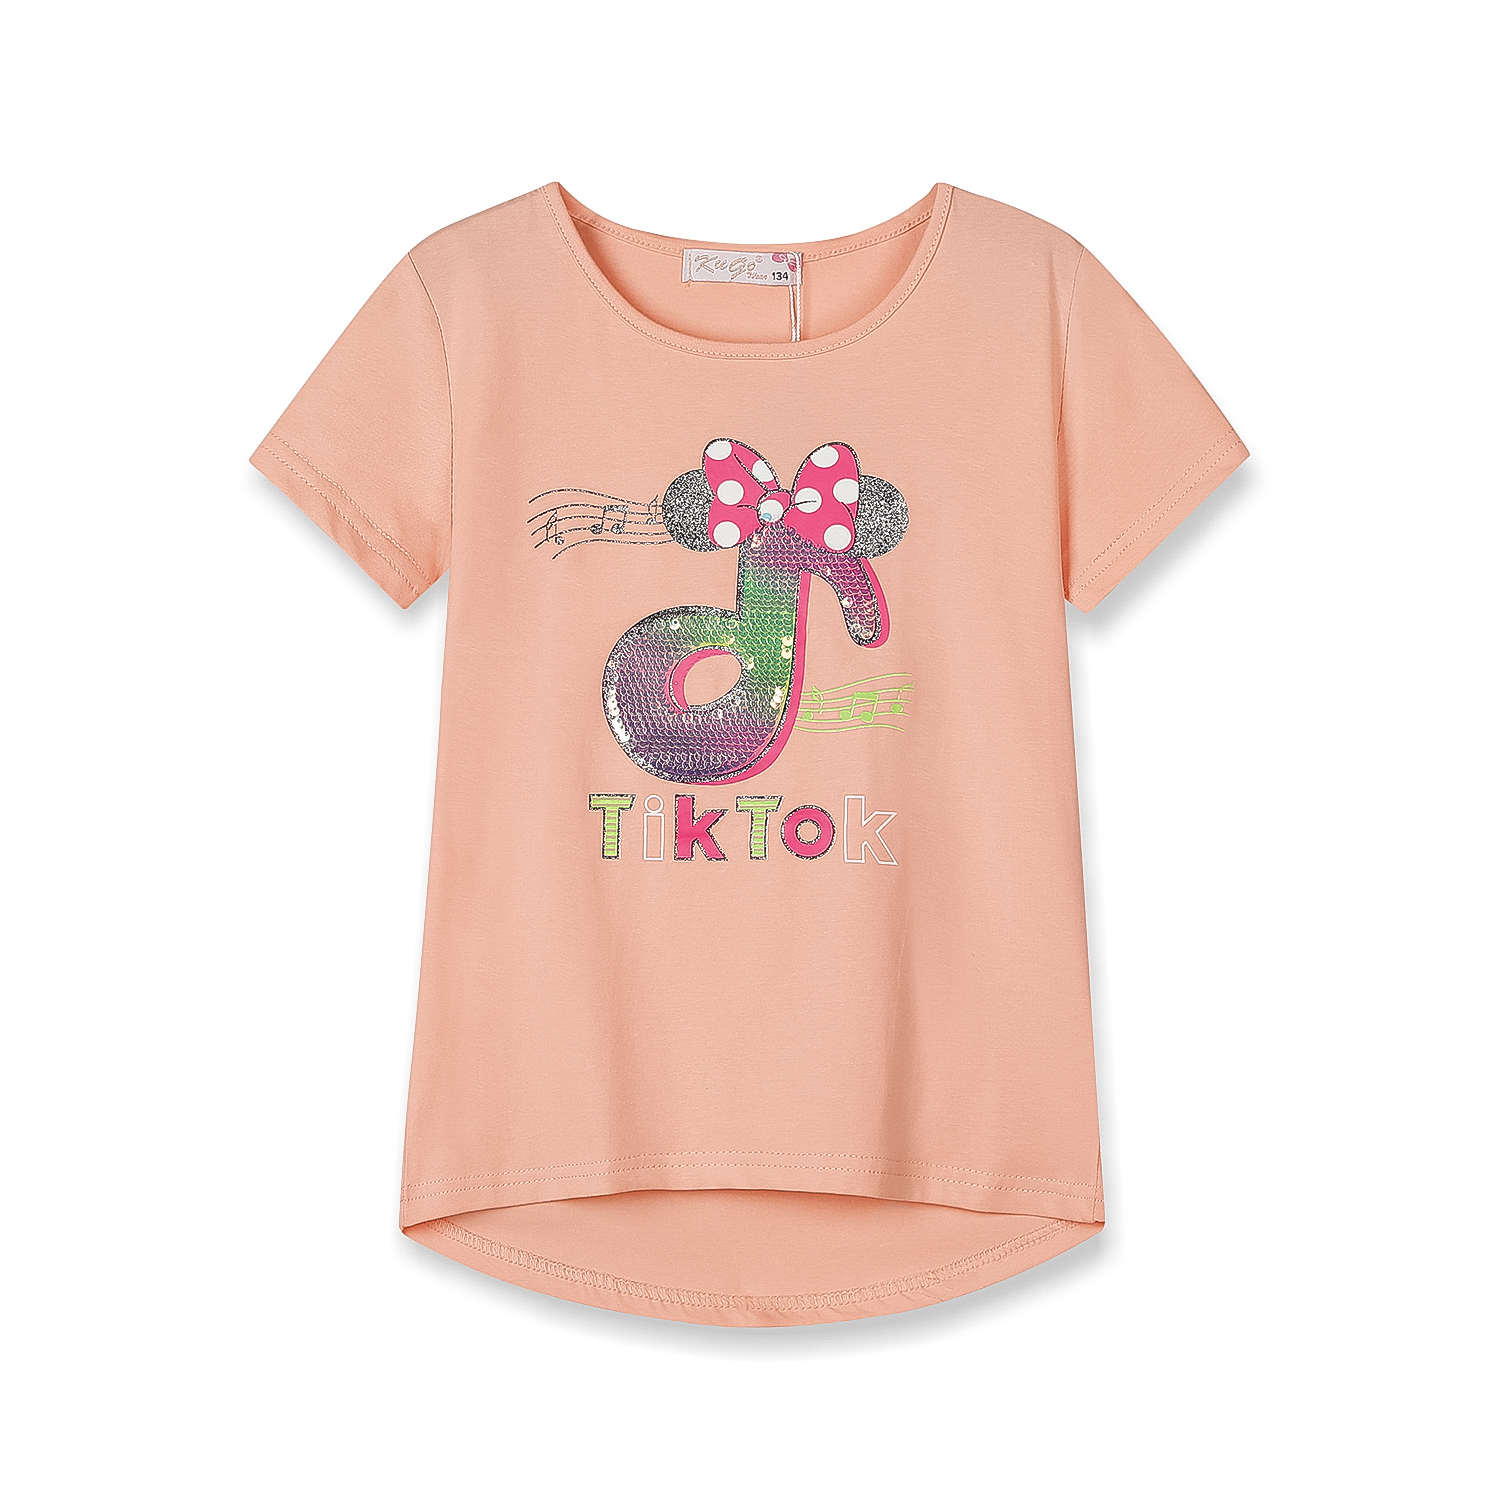 Dívčí triko s flitry - KUGO WK0803, lososová Barva: Lososová, Velikost: 128